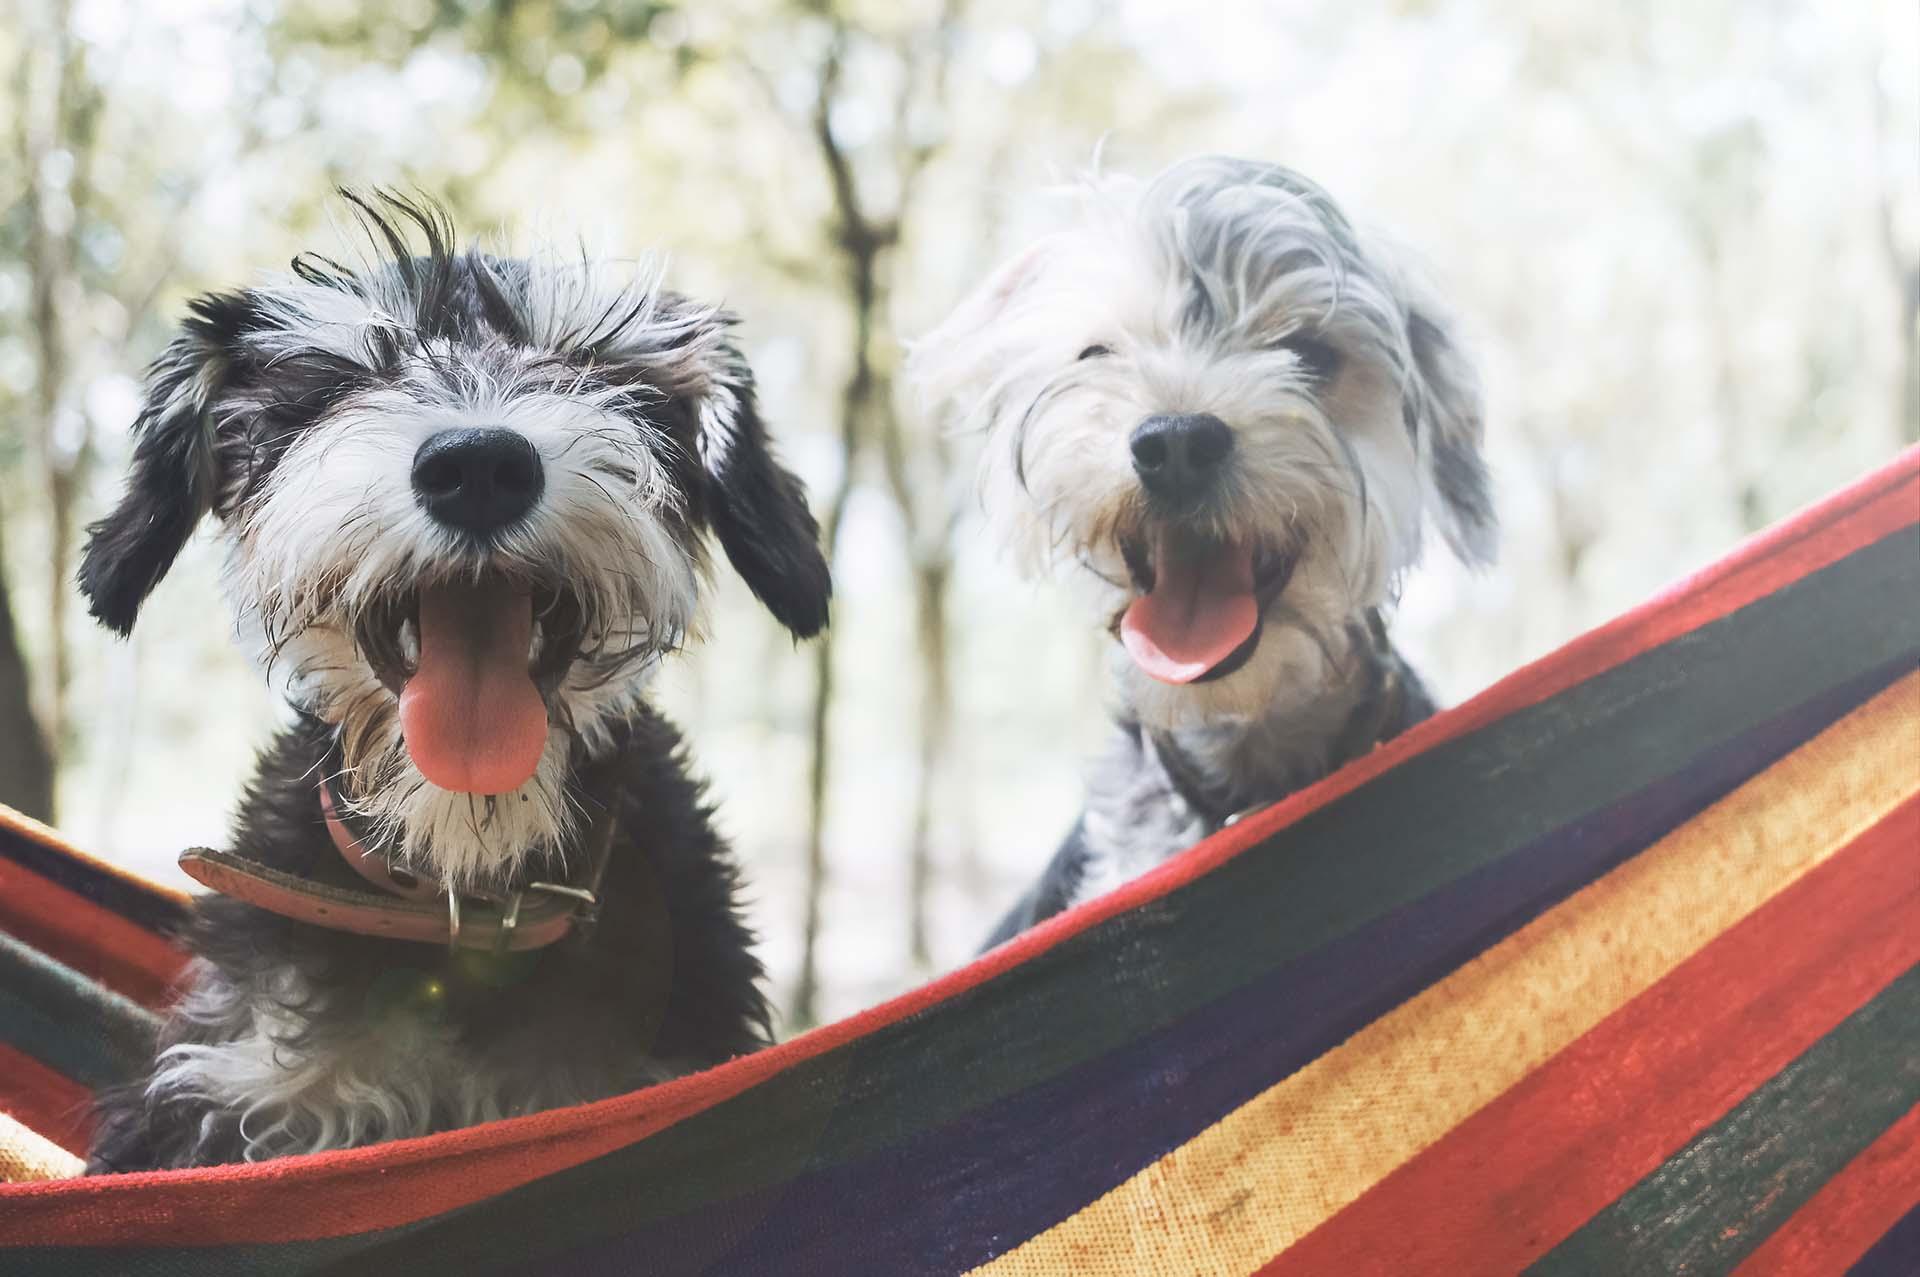 Dogs in a hammock